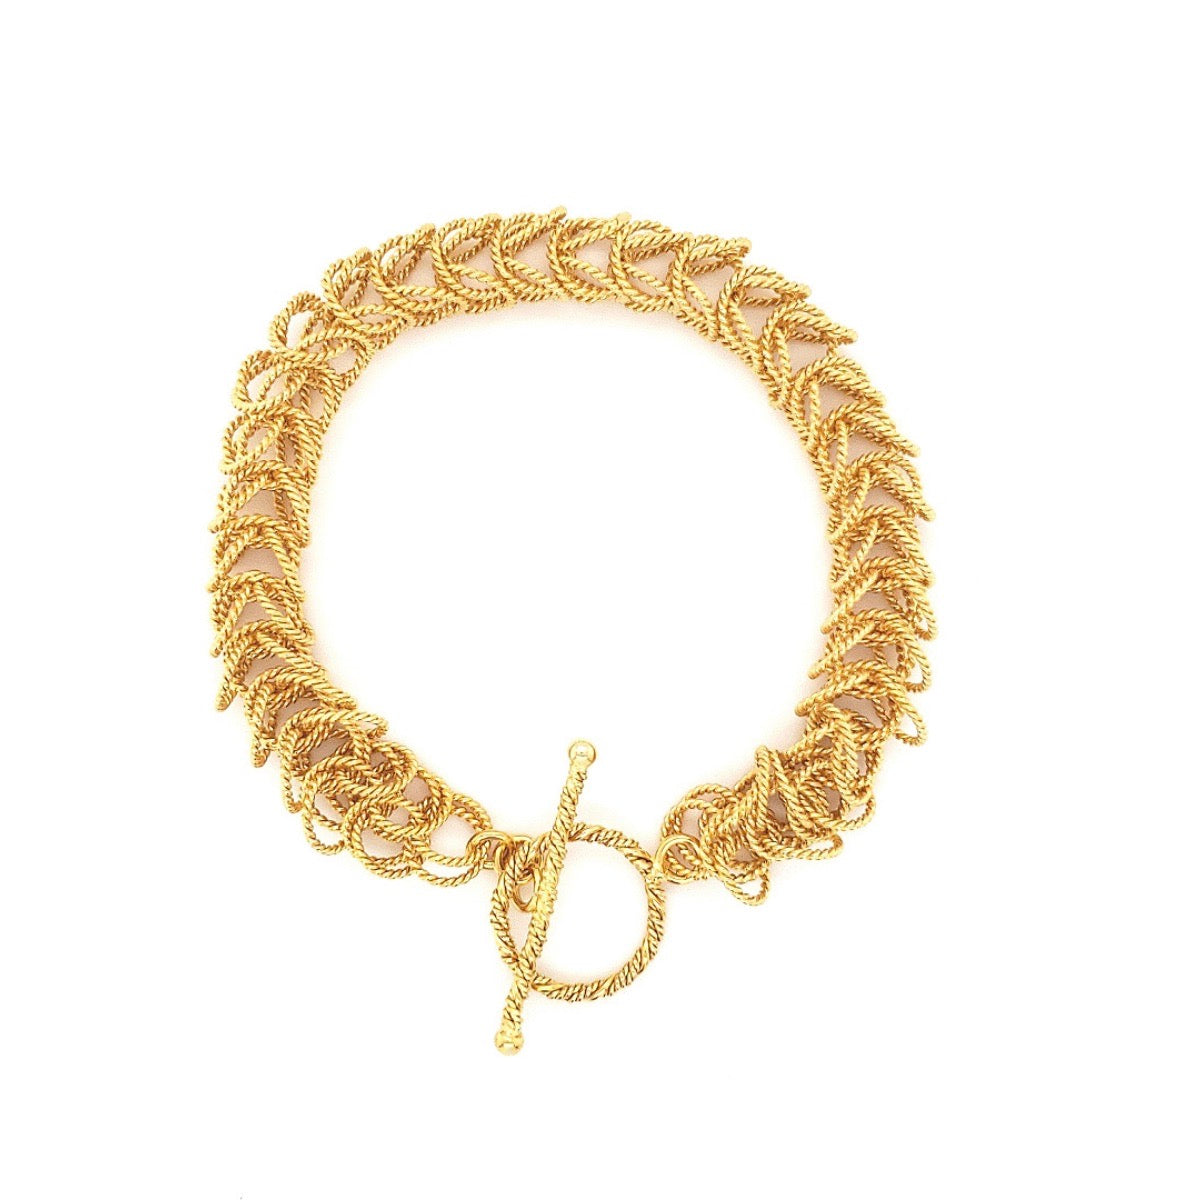 Arpaia Lang Gold Vermeil Bellezza Bracelet - main image white background light box